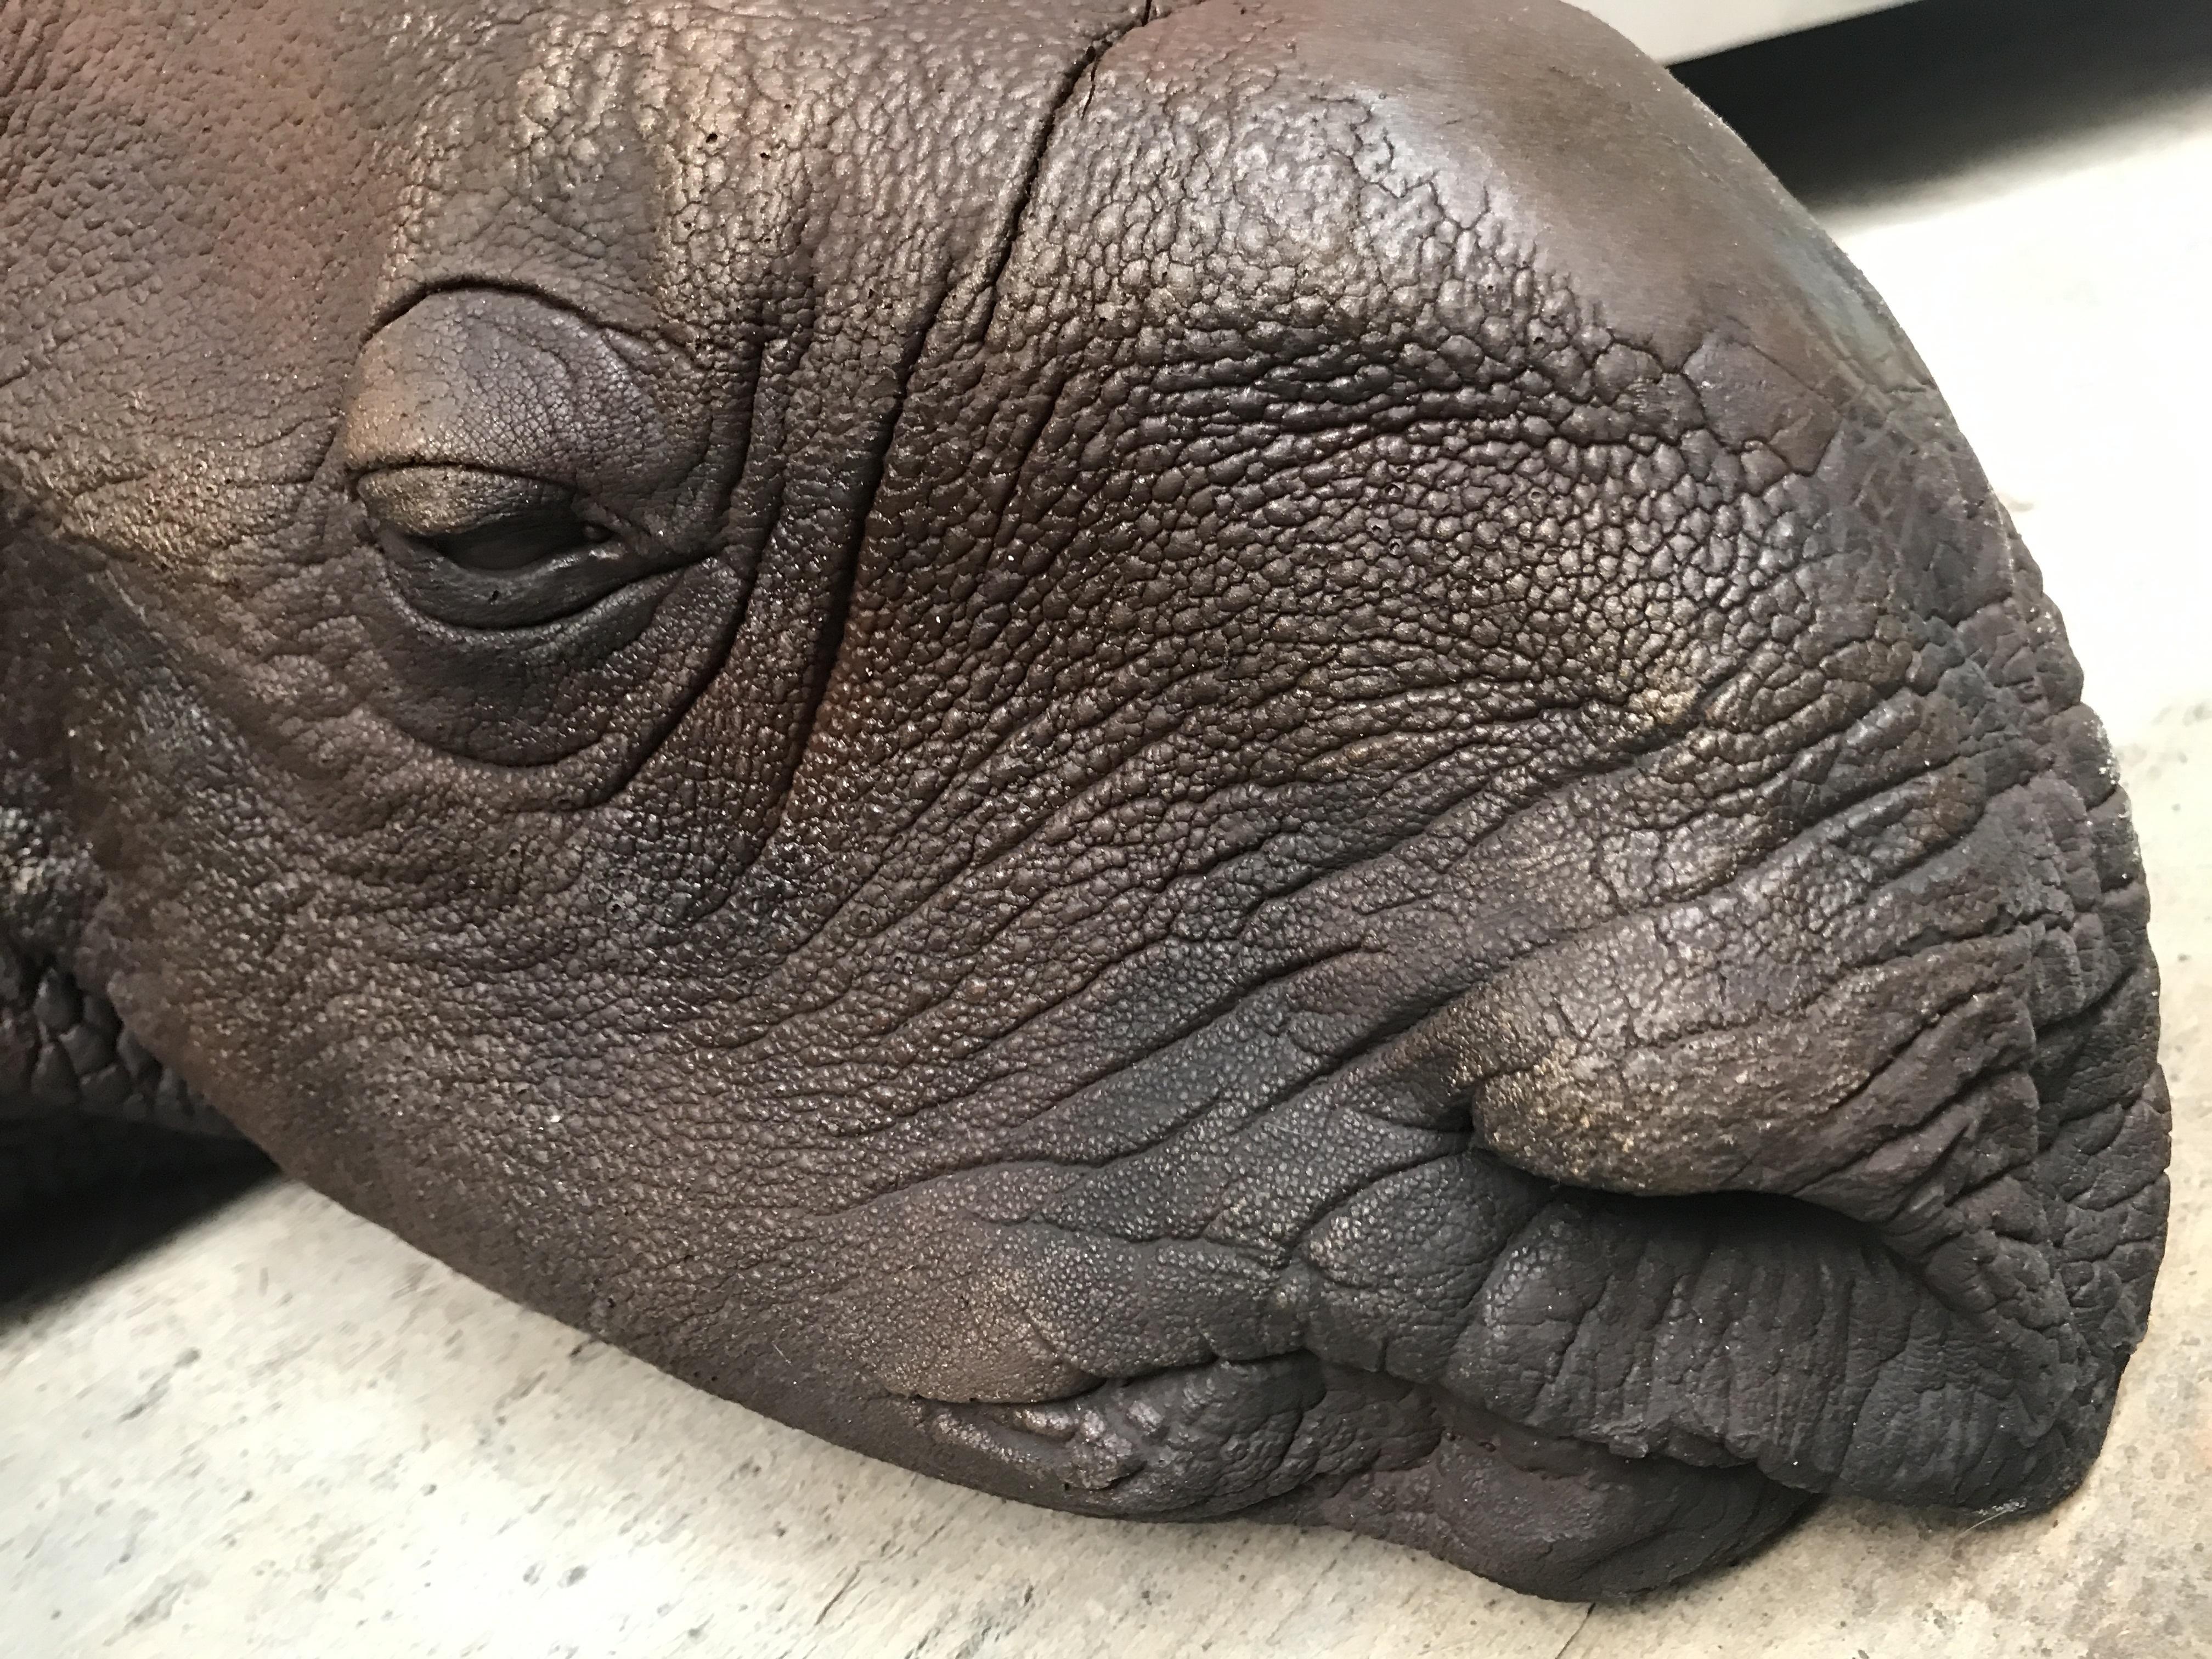 Contemporary Lifelike Replica of a Rhino Calf